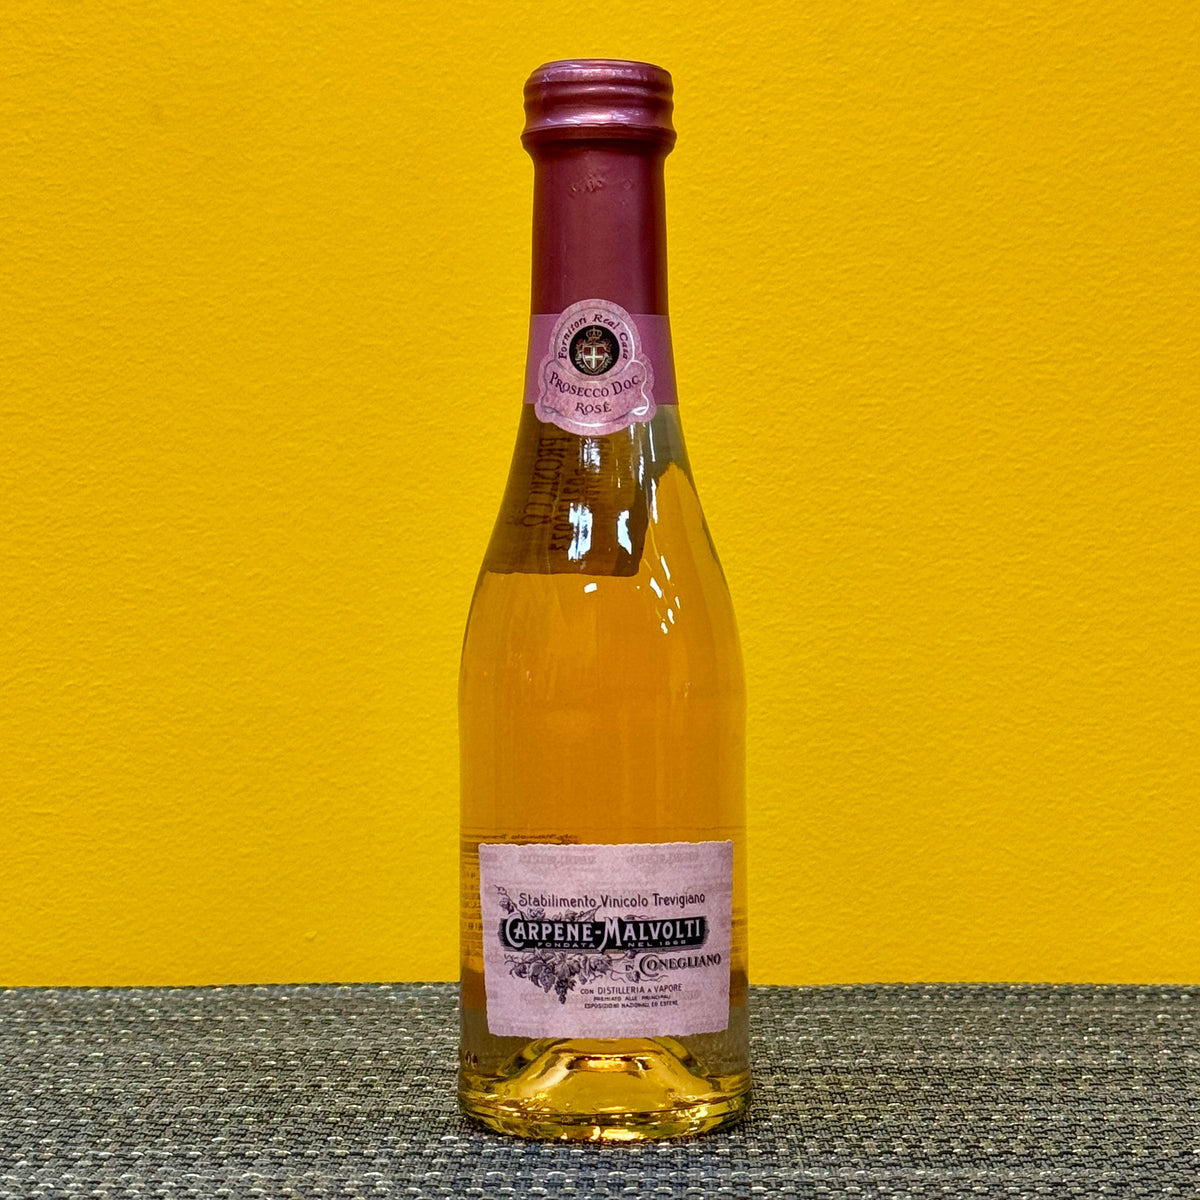 Prosecco Rosé 2020, Carpene-Malvolti (200ml)